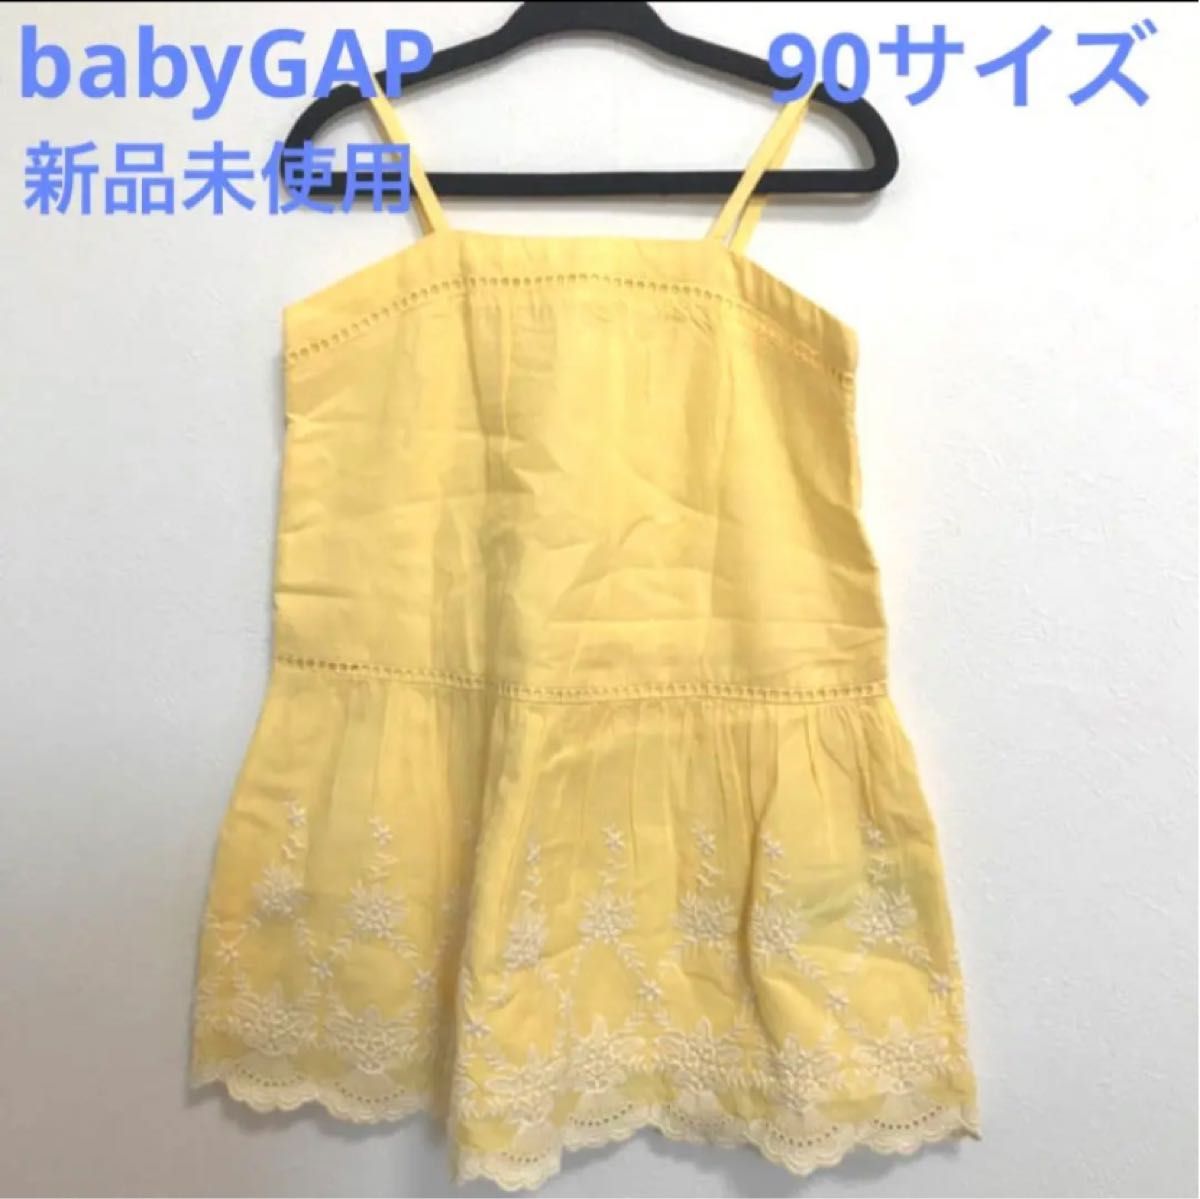 新品未使用 babyGAPワンピース2years(90サイズ位) 刺繍 春夏黄色